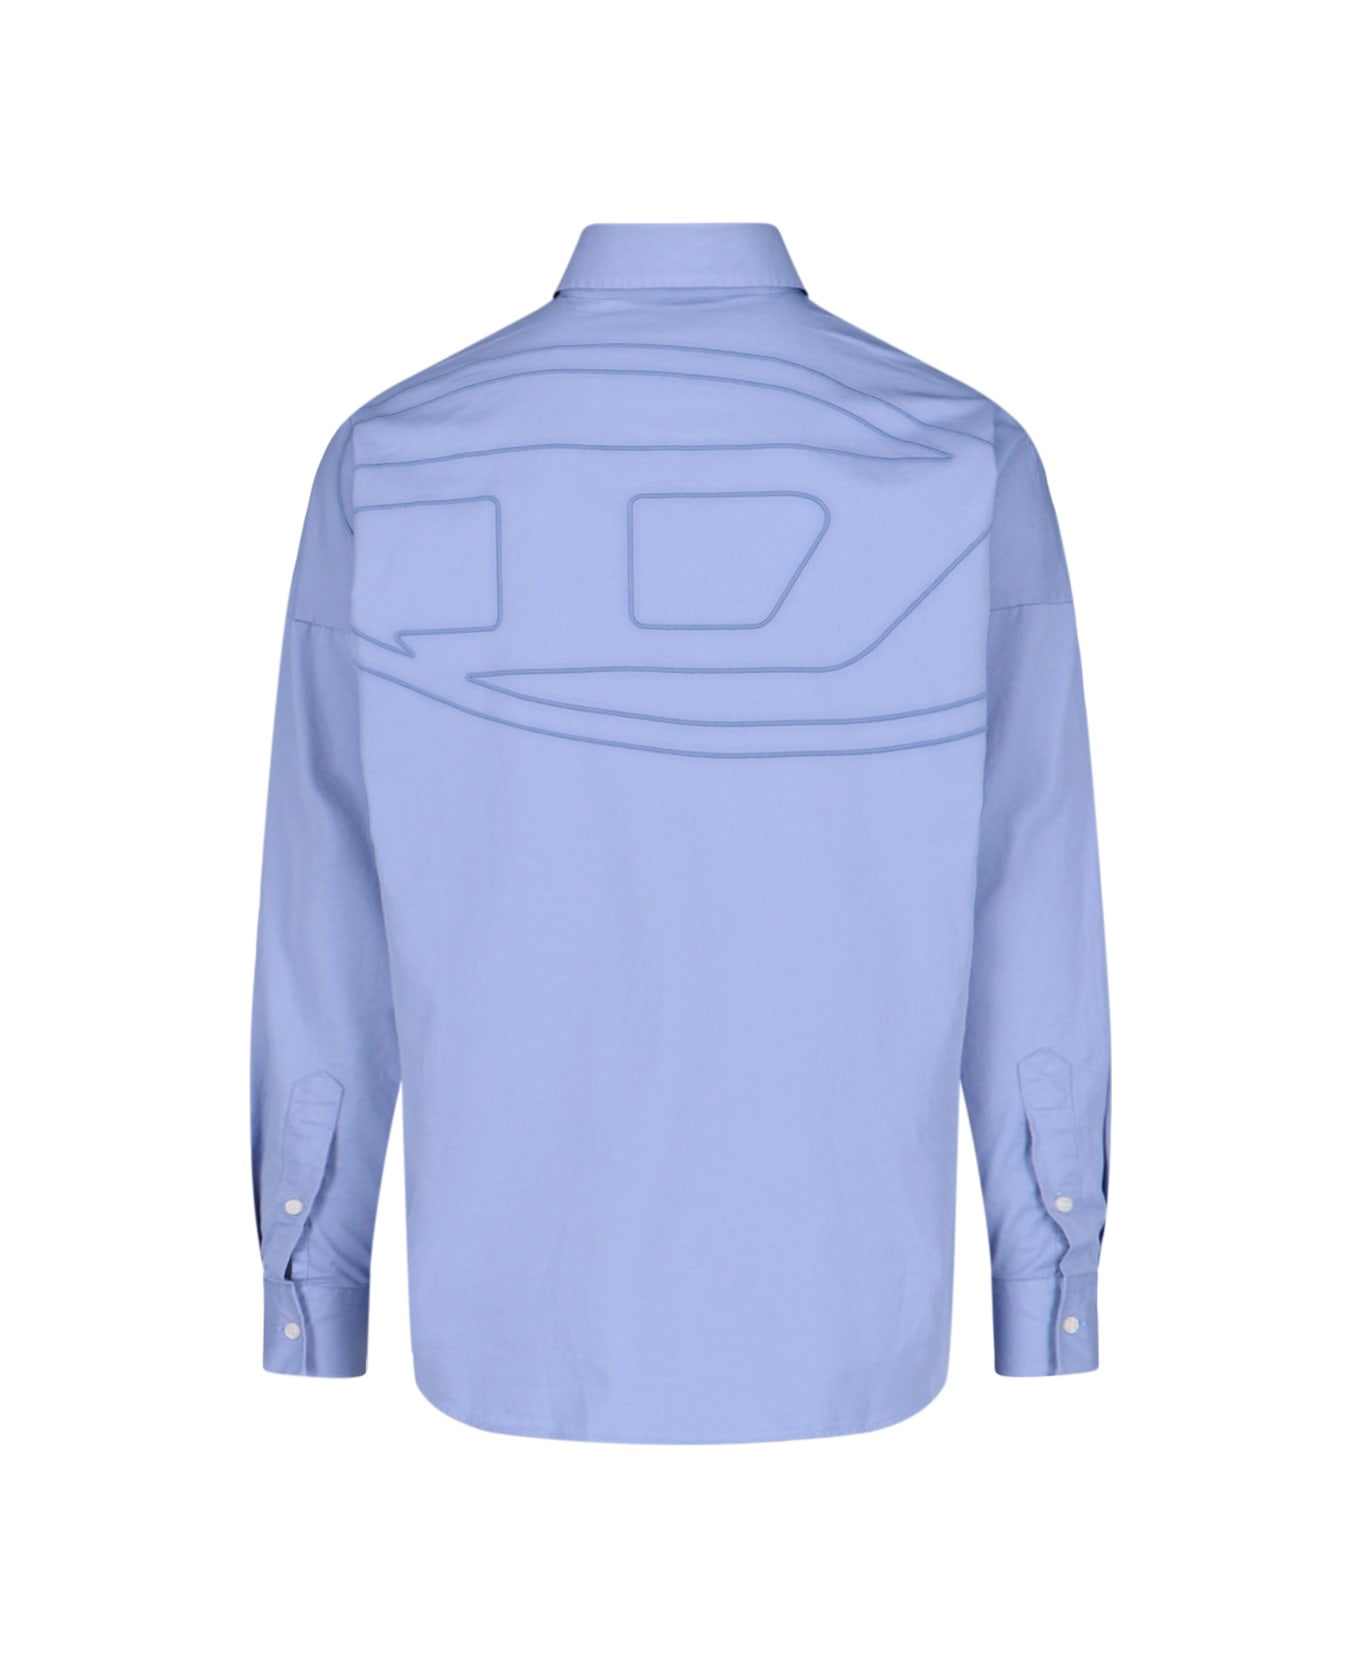 Diesel 'oval D' Shirt - Light Blue